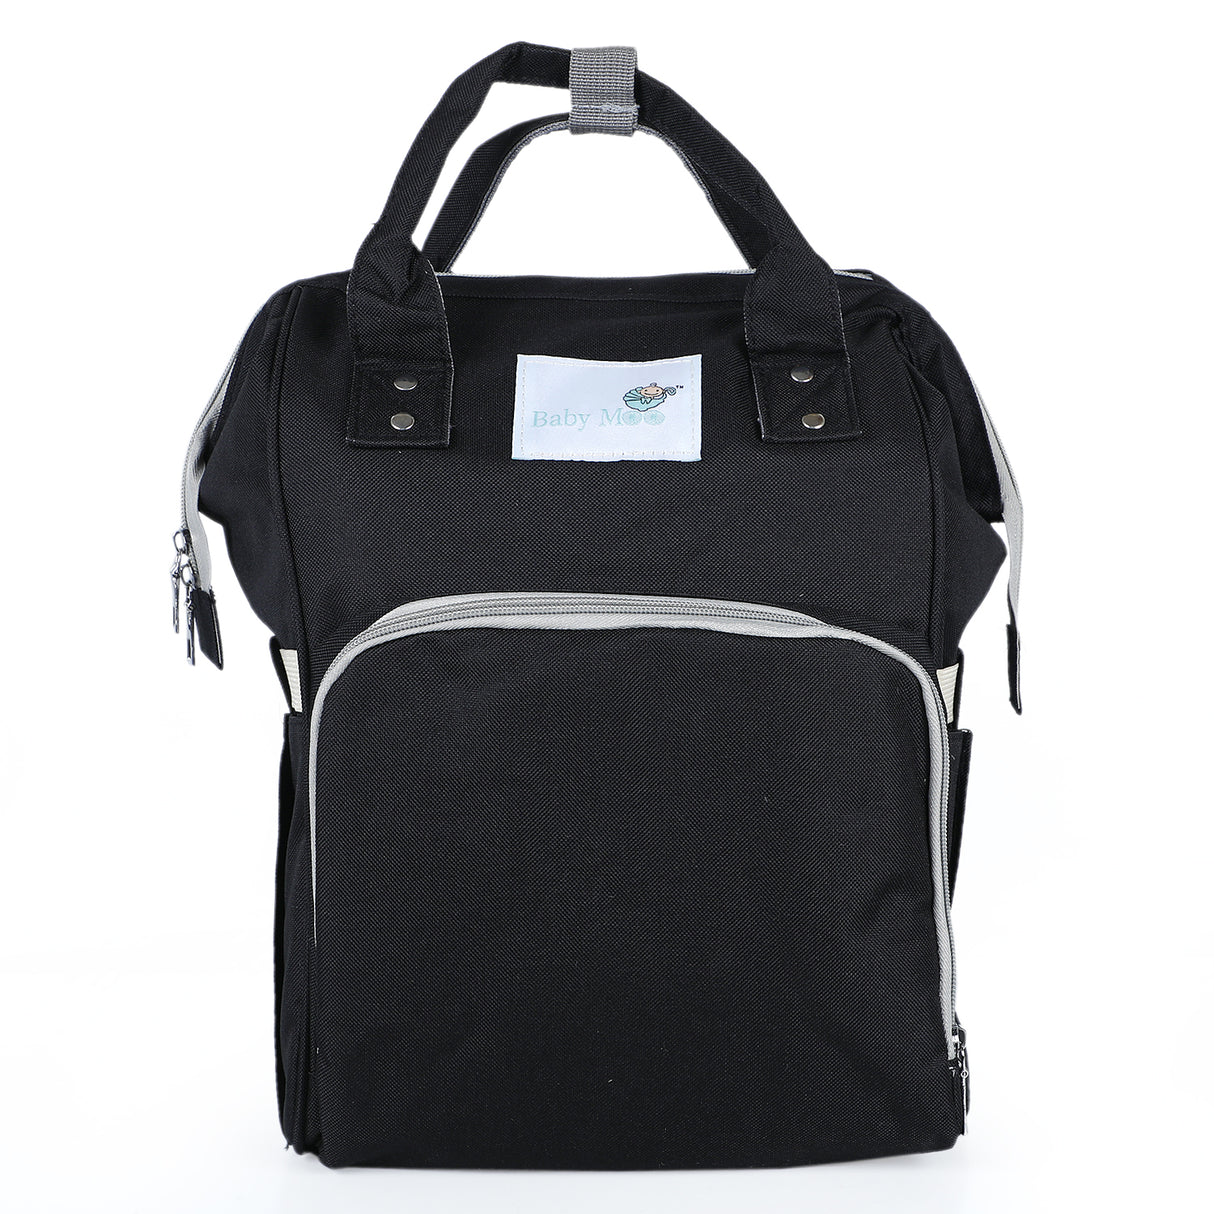 Baby Moo Plain Large Capacity Backpack Diaper Bag